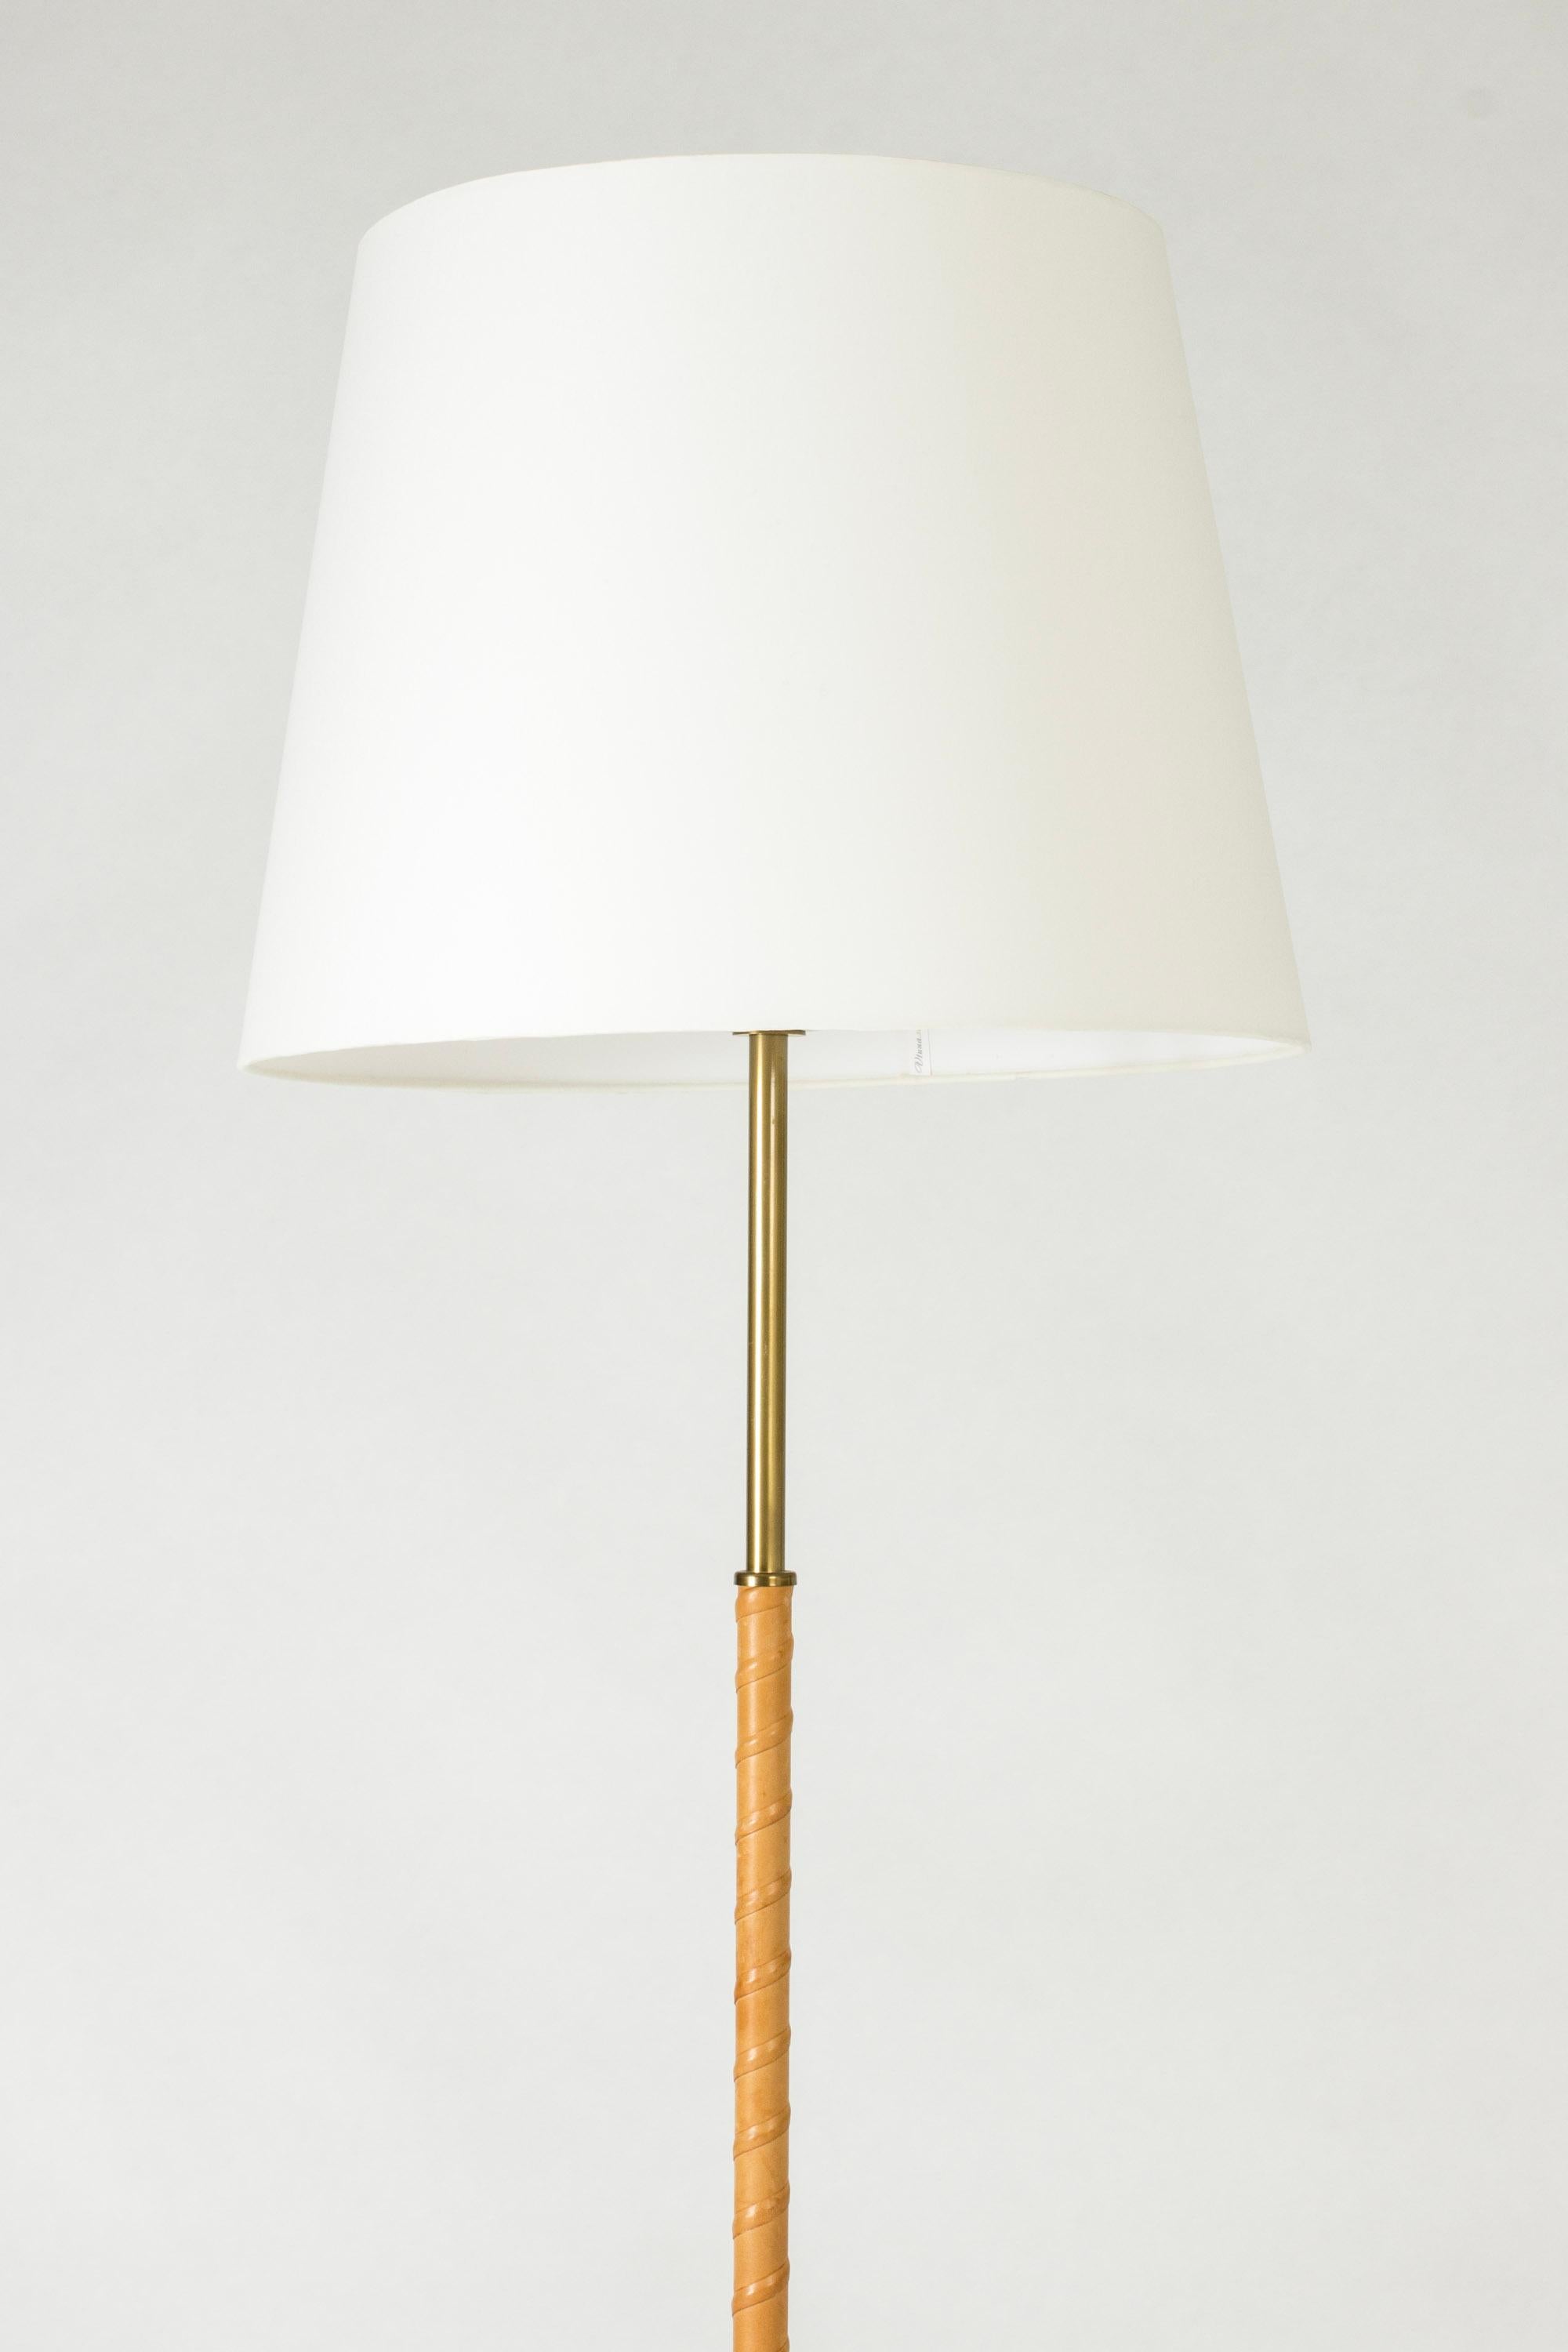 Stehlampe von Böhlmarks aus Messing mit einem lederumwickelten Stiel. Ein elegantes, zeitloses Stück.